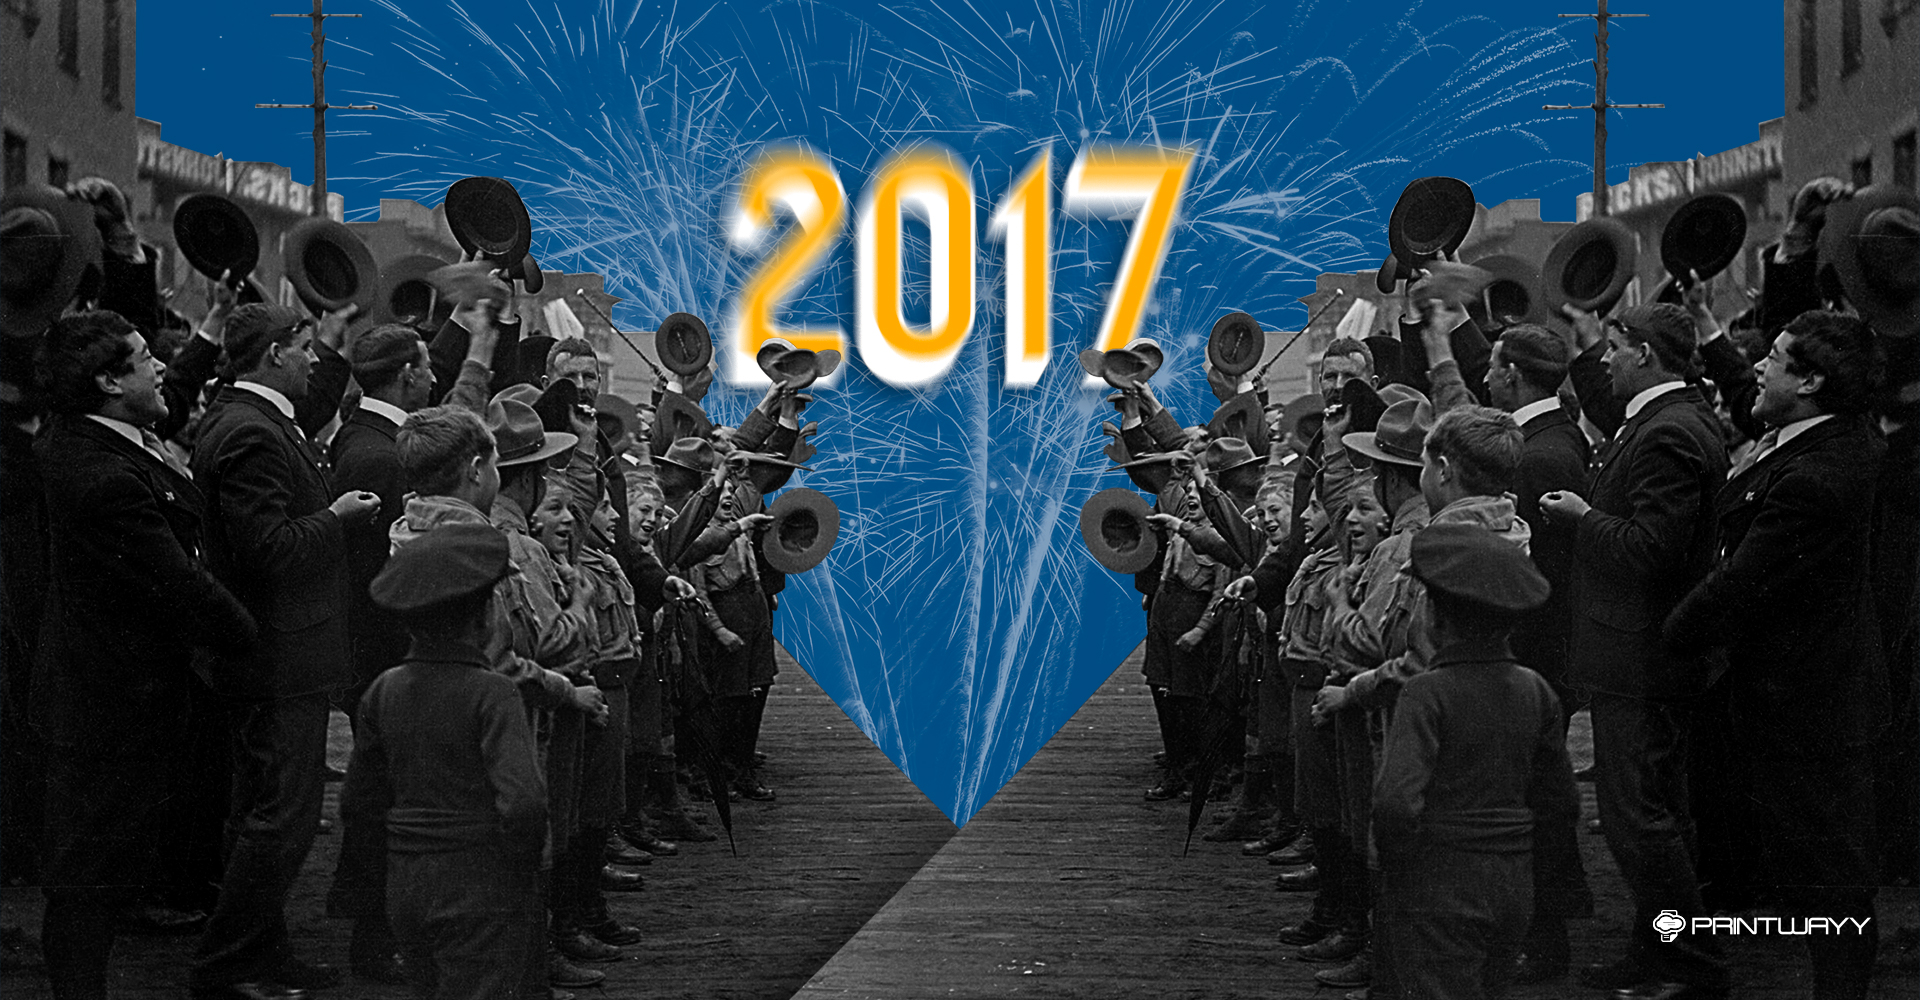 Imagem de pessoas acenando, algumas com chapéu na mão, fogos de artifício ao fundo. A imagem representa a chegada do final de ano e apresenta a retrospectiva da PrintWayy.